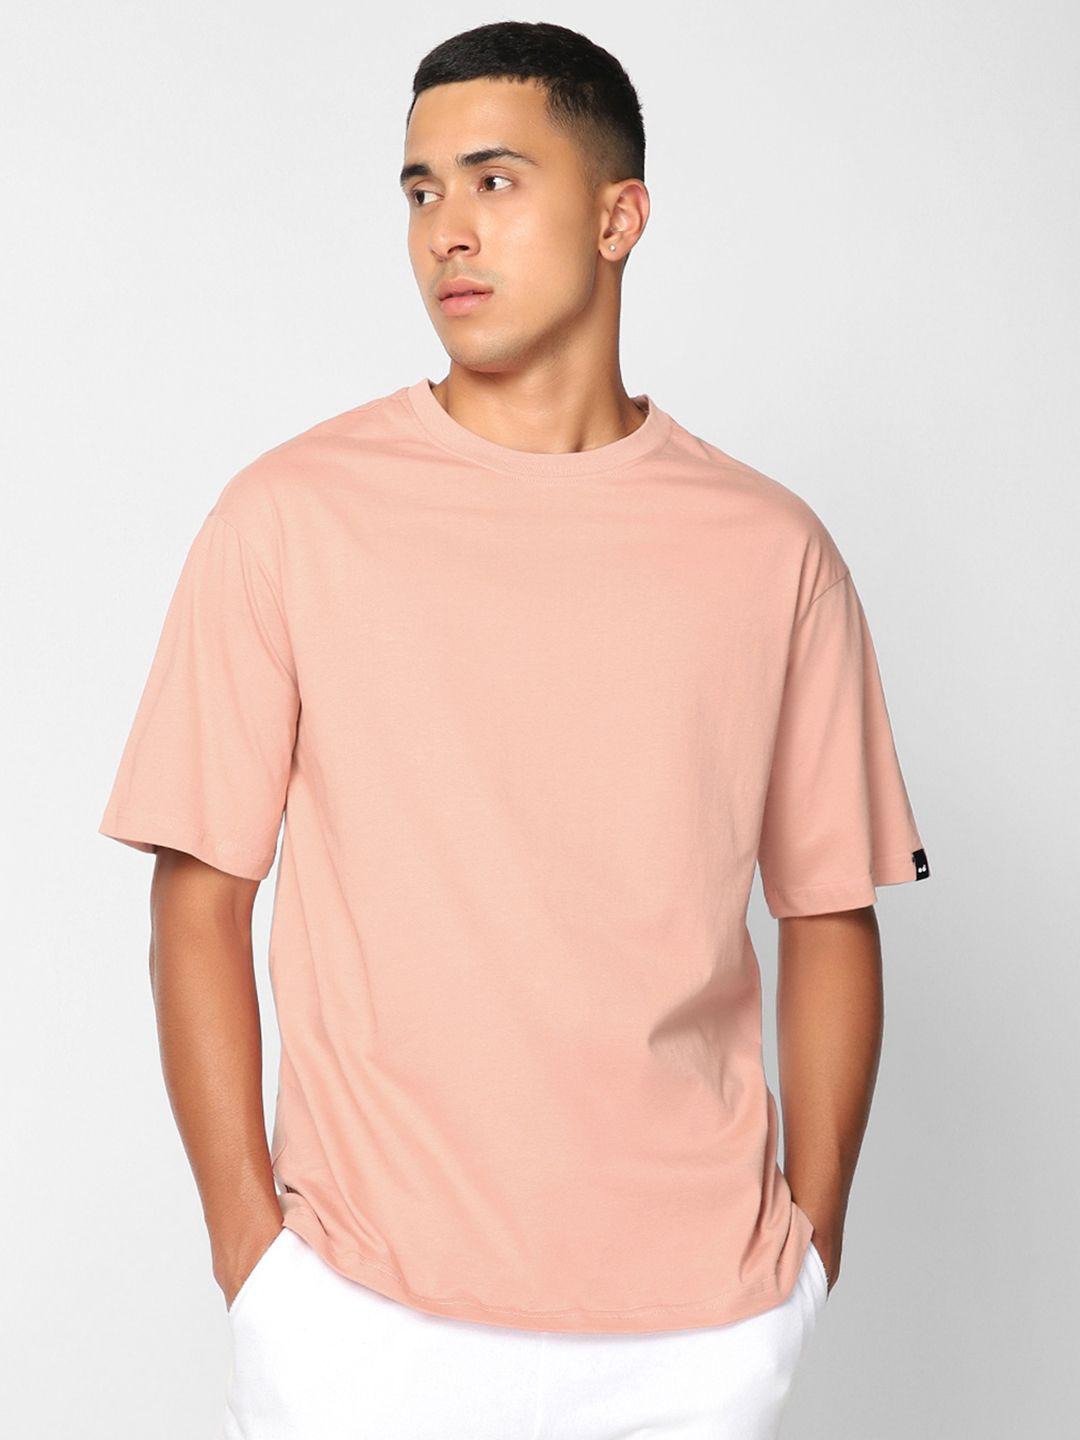 bewakoof-men-coral-solid-round-neck-oversized-cotton-t-shirt